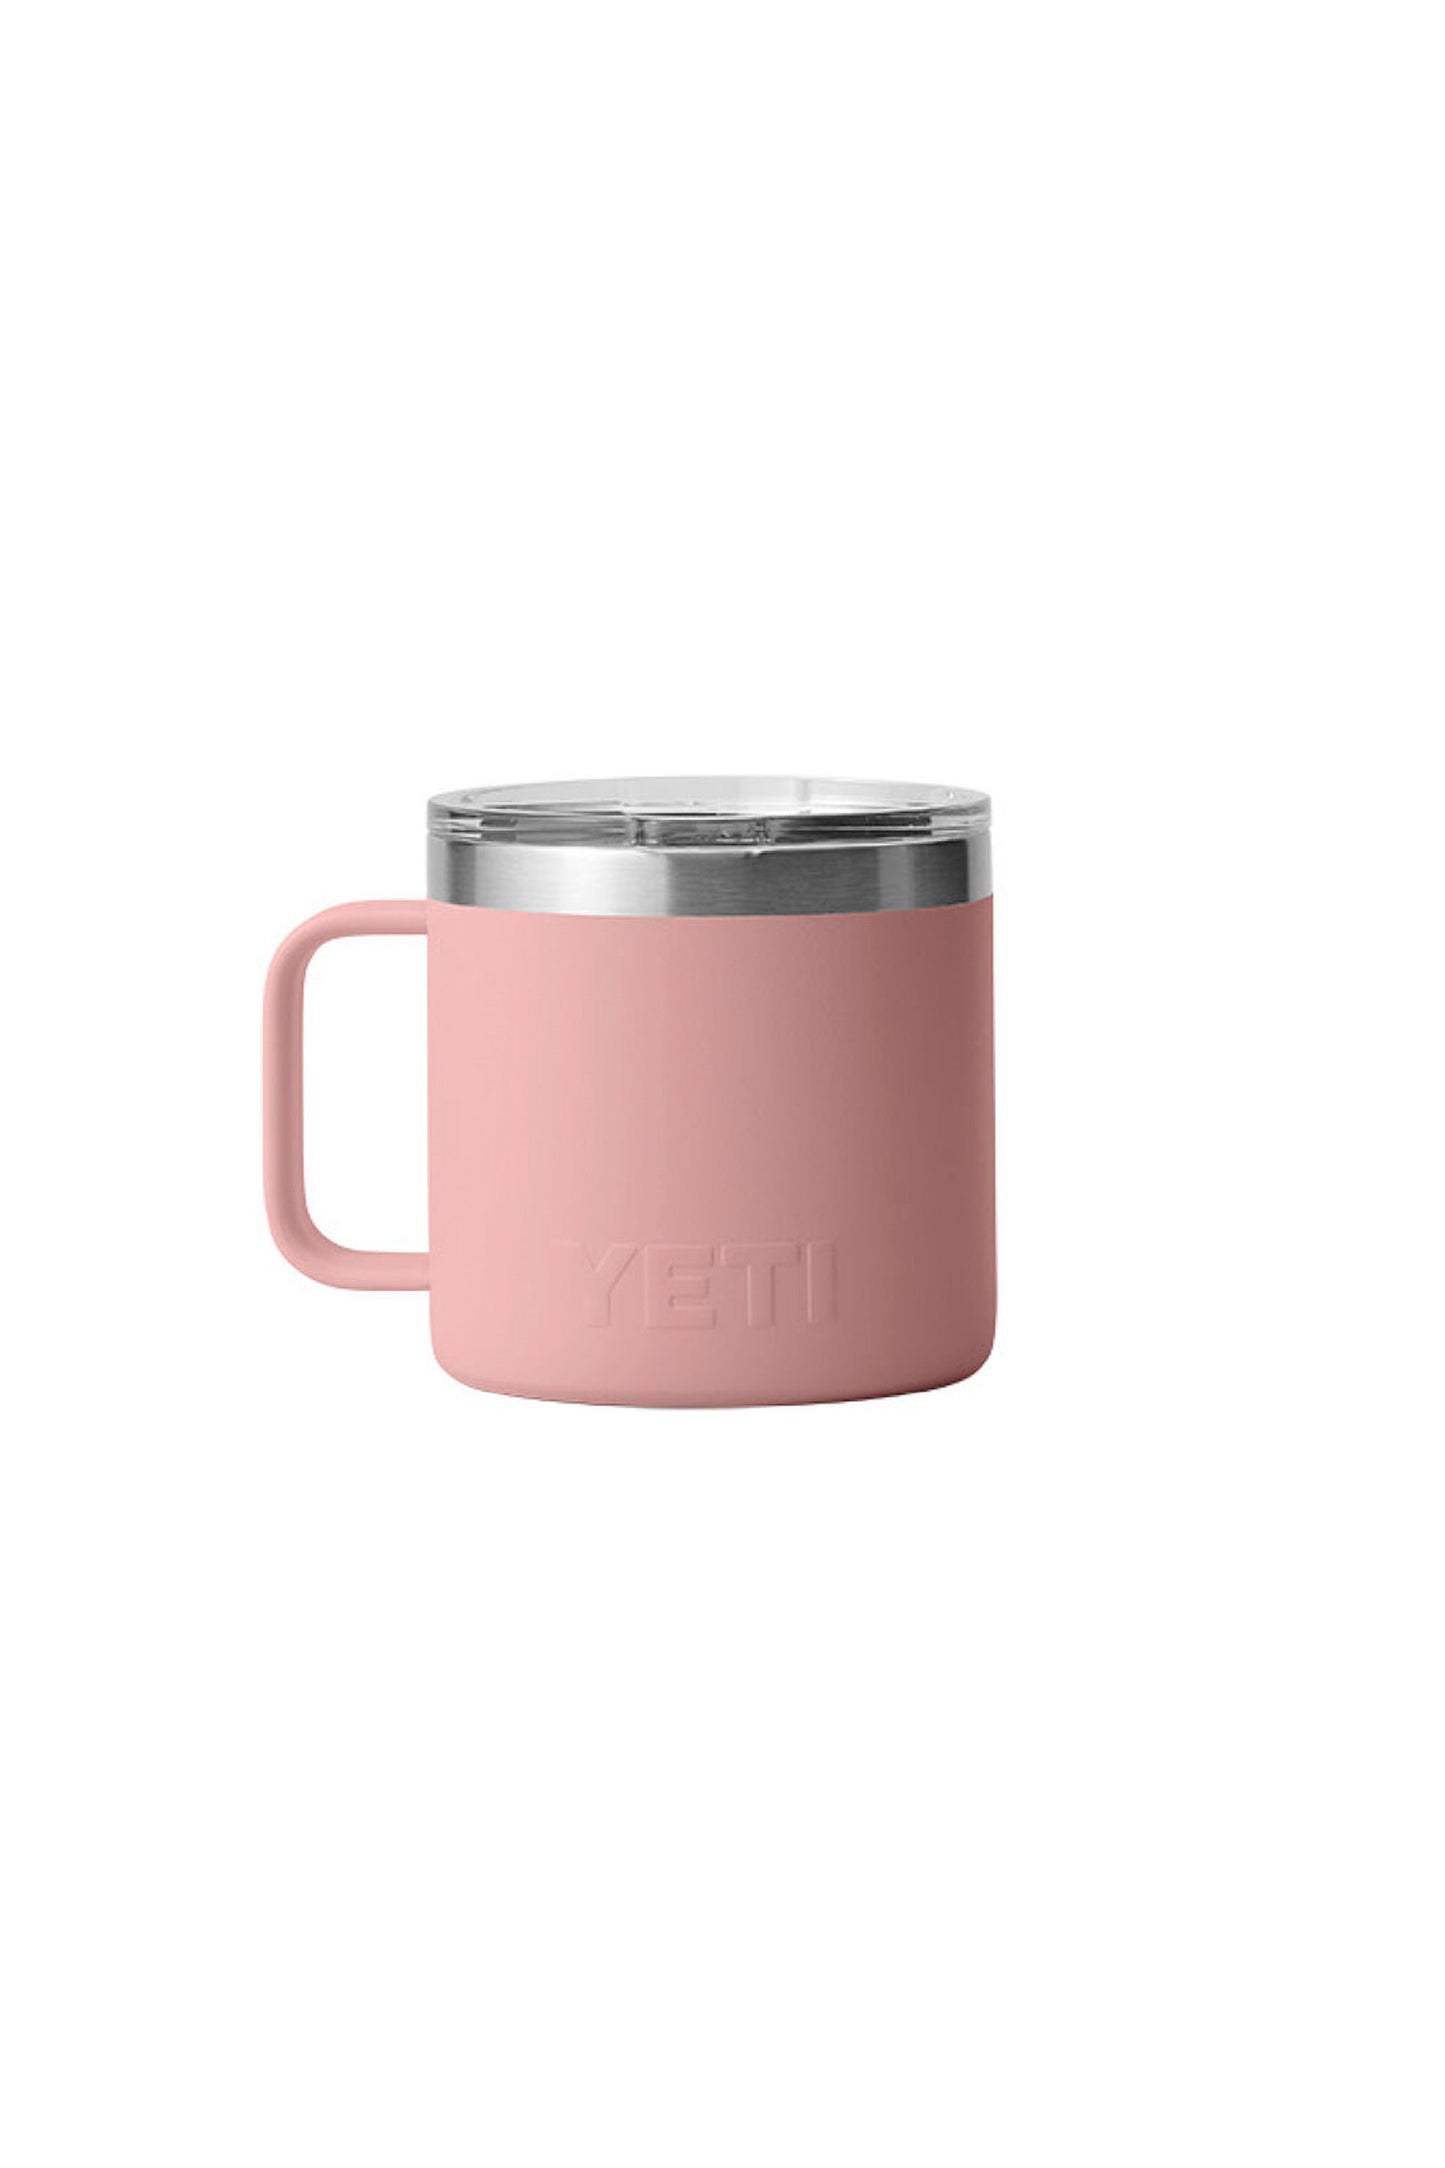 Pukas-Surf-Shop-Yeti-Drinkware-Rambler-14-oz-mug-sandstone-pink